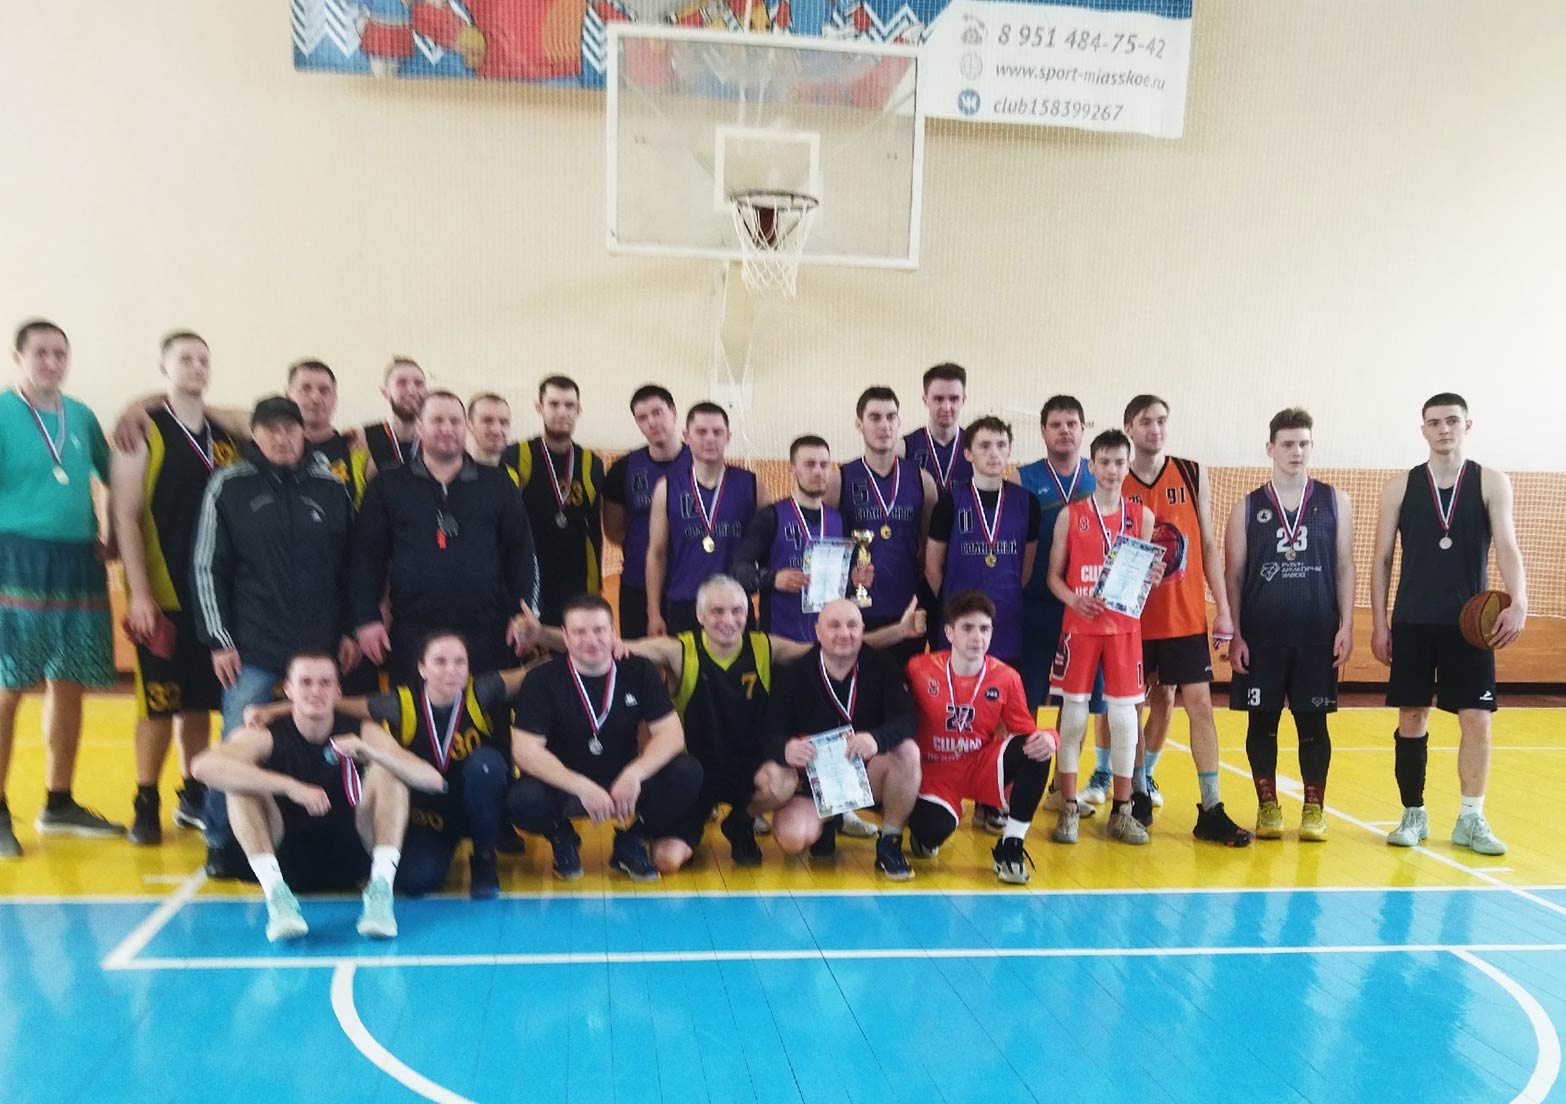 Турнир по баскетболу в память об учителе состоялся в селе Миасском